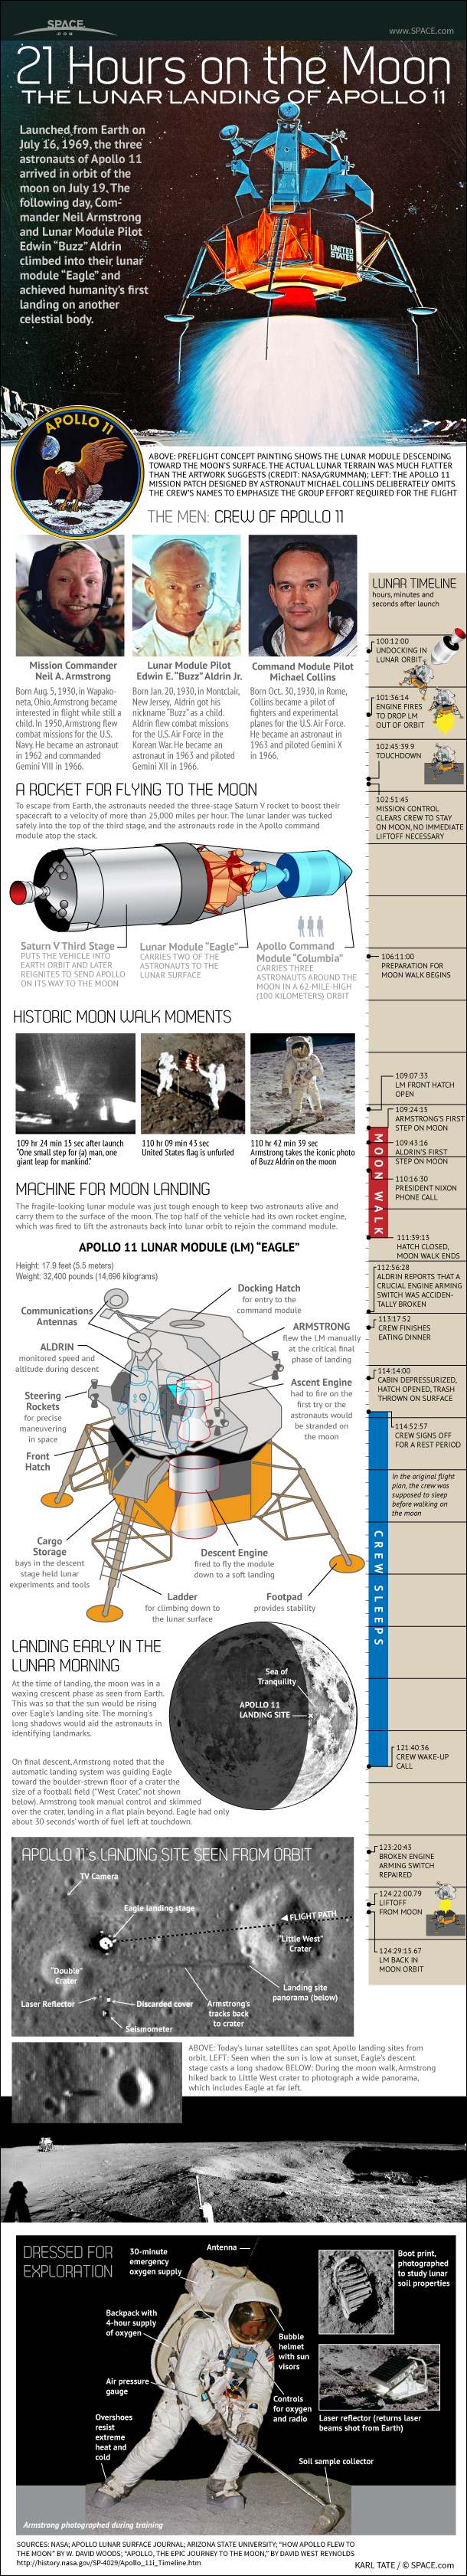 apollo-11-armstrong-aldrin-collins-first-lunar-landing-120831a